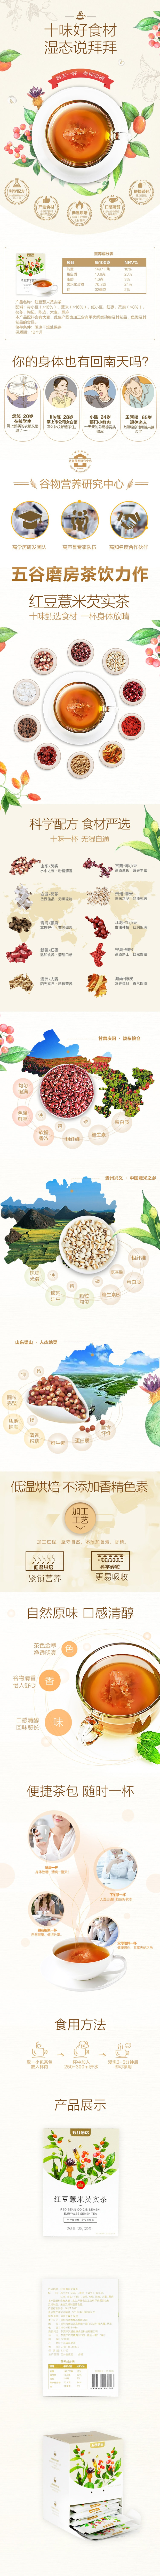 五穀磨房 紅豆薏米芡實茶 120g(20包) 養生除濕 無糖無添加